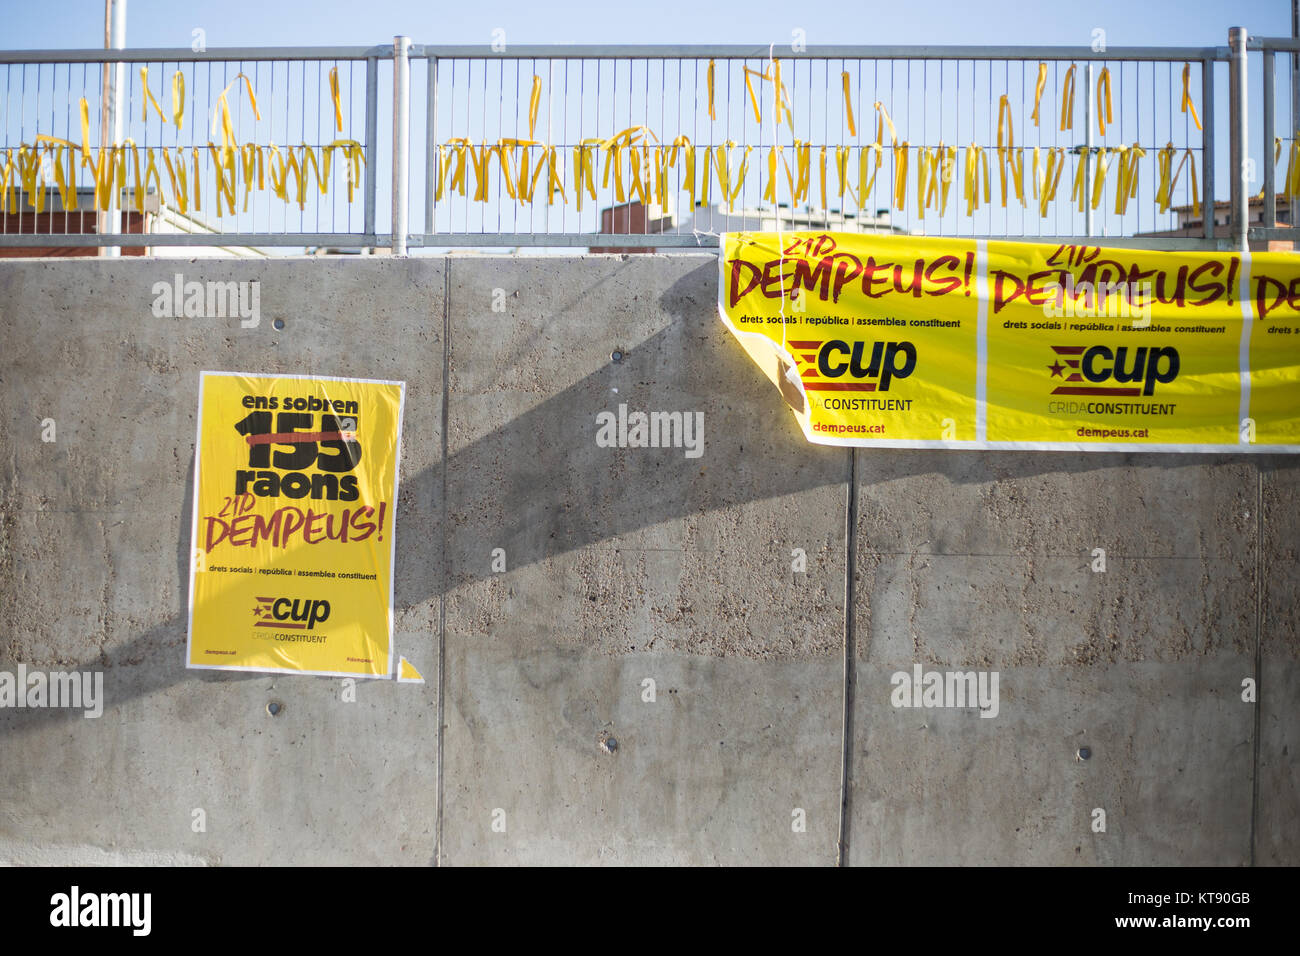 Barcellona, Spagna. 22 Dic, 2017. Alcuni poster di estrema sinistra party 'La coppa' in Sabadell Credito: Luay Albasha/Alamy Live News Foto Stock